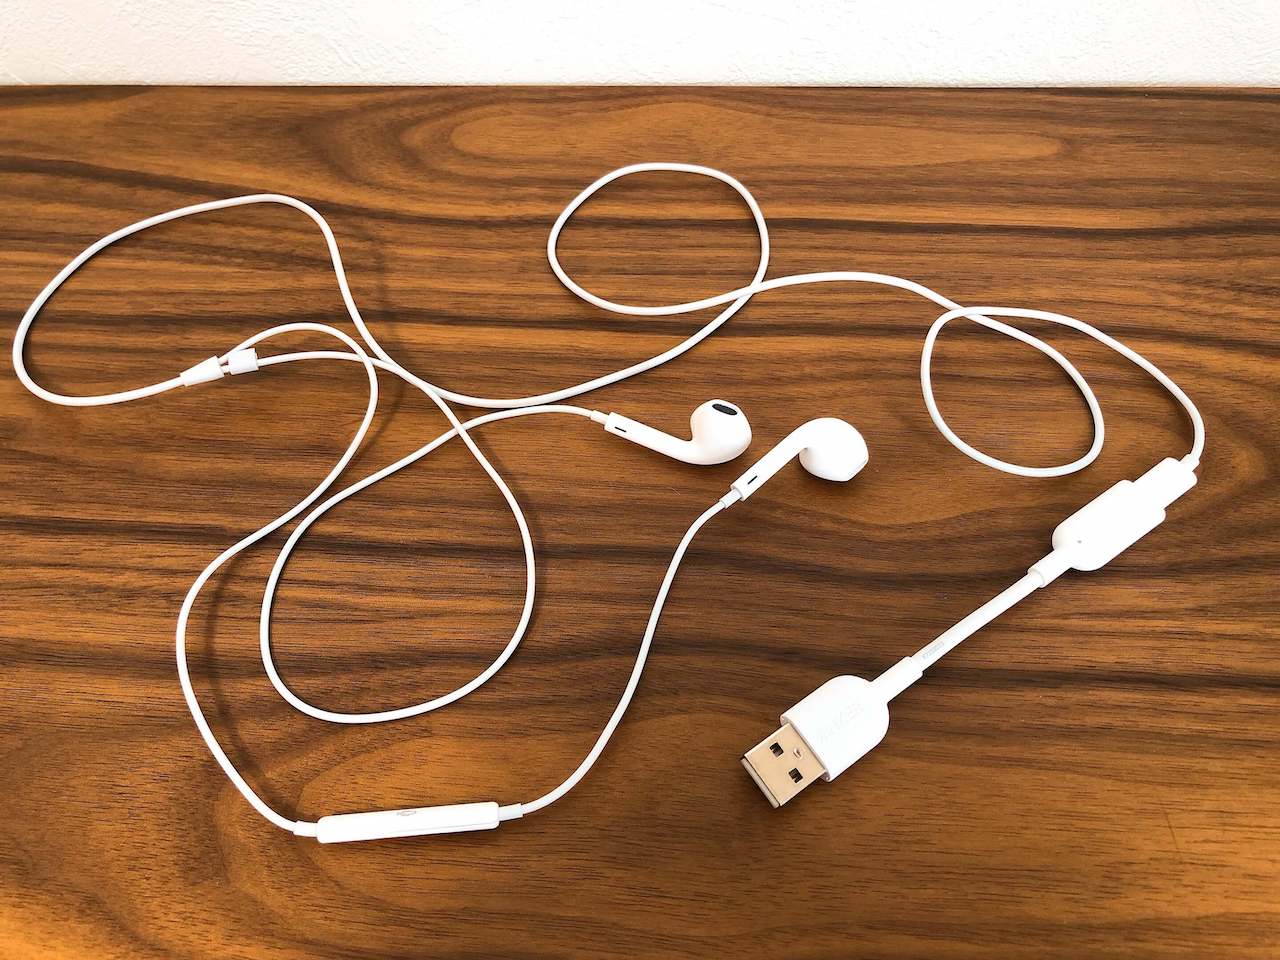 Anker（アンカー）の「USB to Lightning オーディオアダプター」にiPhone用のイヤホン「Ear Pods」を接続した写真です。